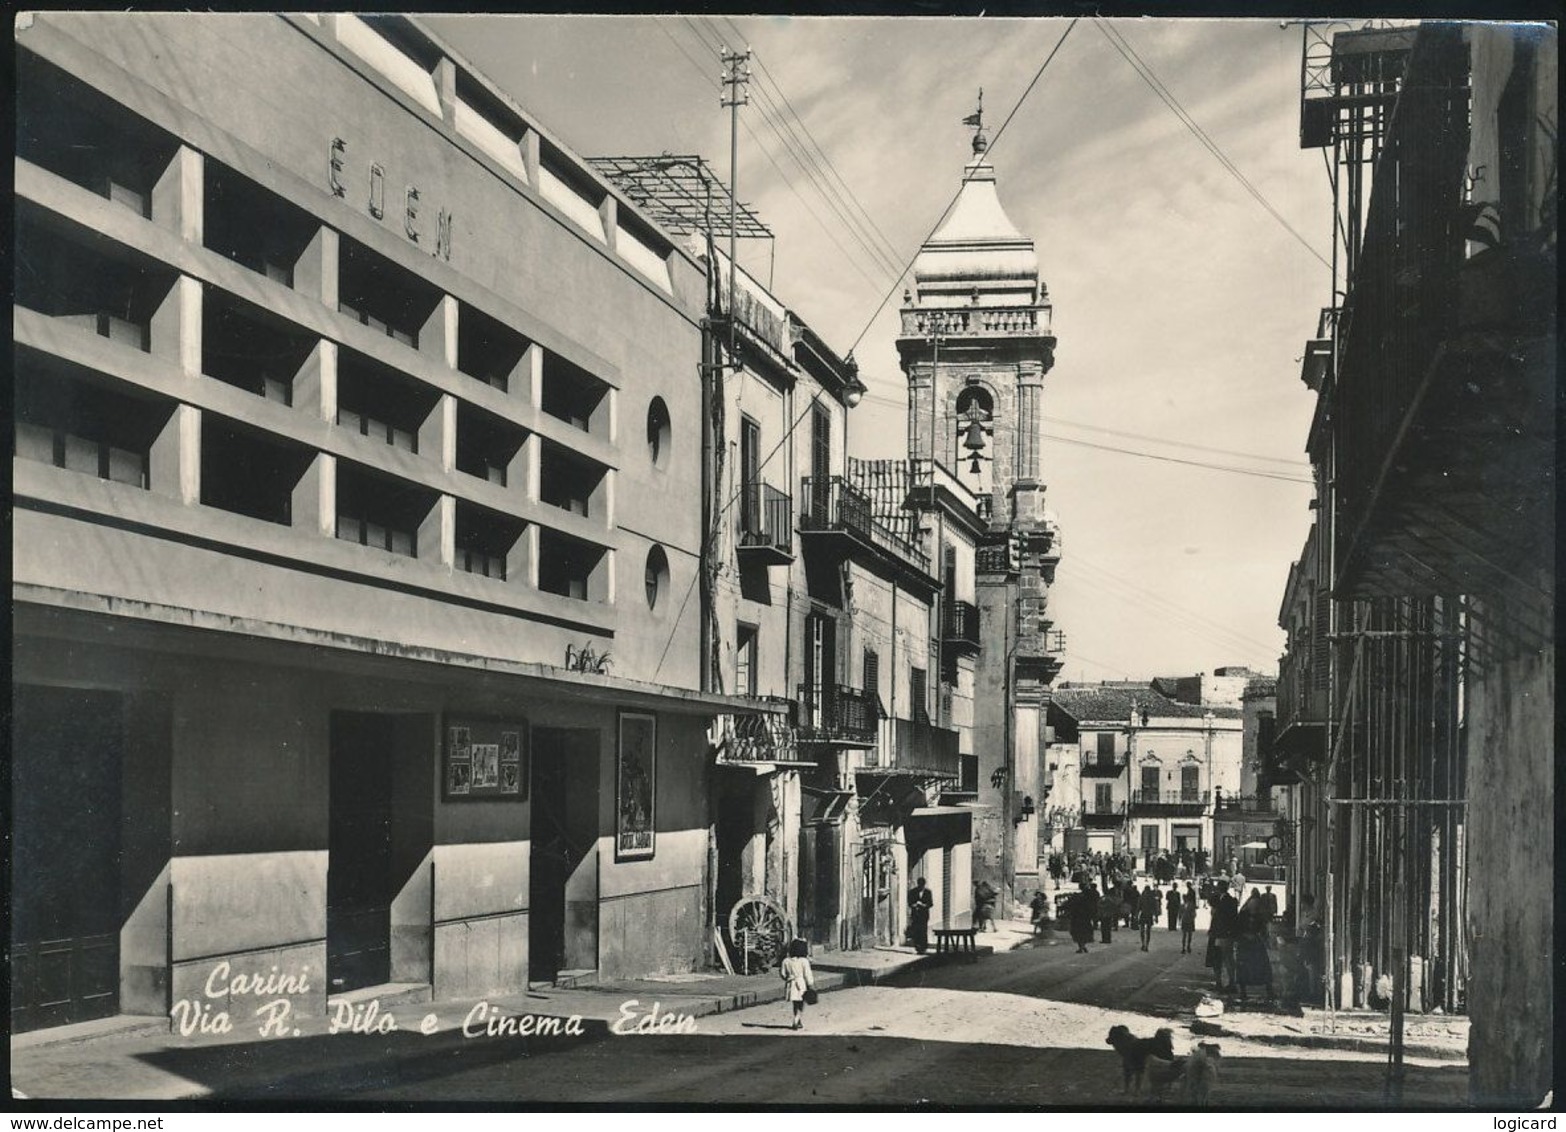 CARINI (PALERMO) - VIA ROSOLINO PILO E CINEMA EDEN 1965 - Palermo